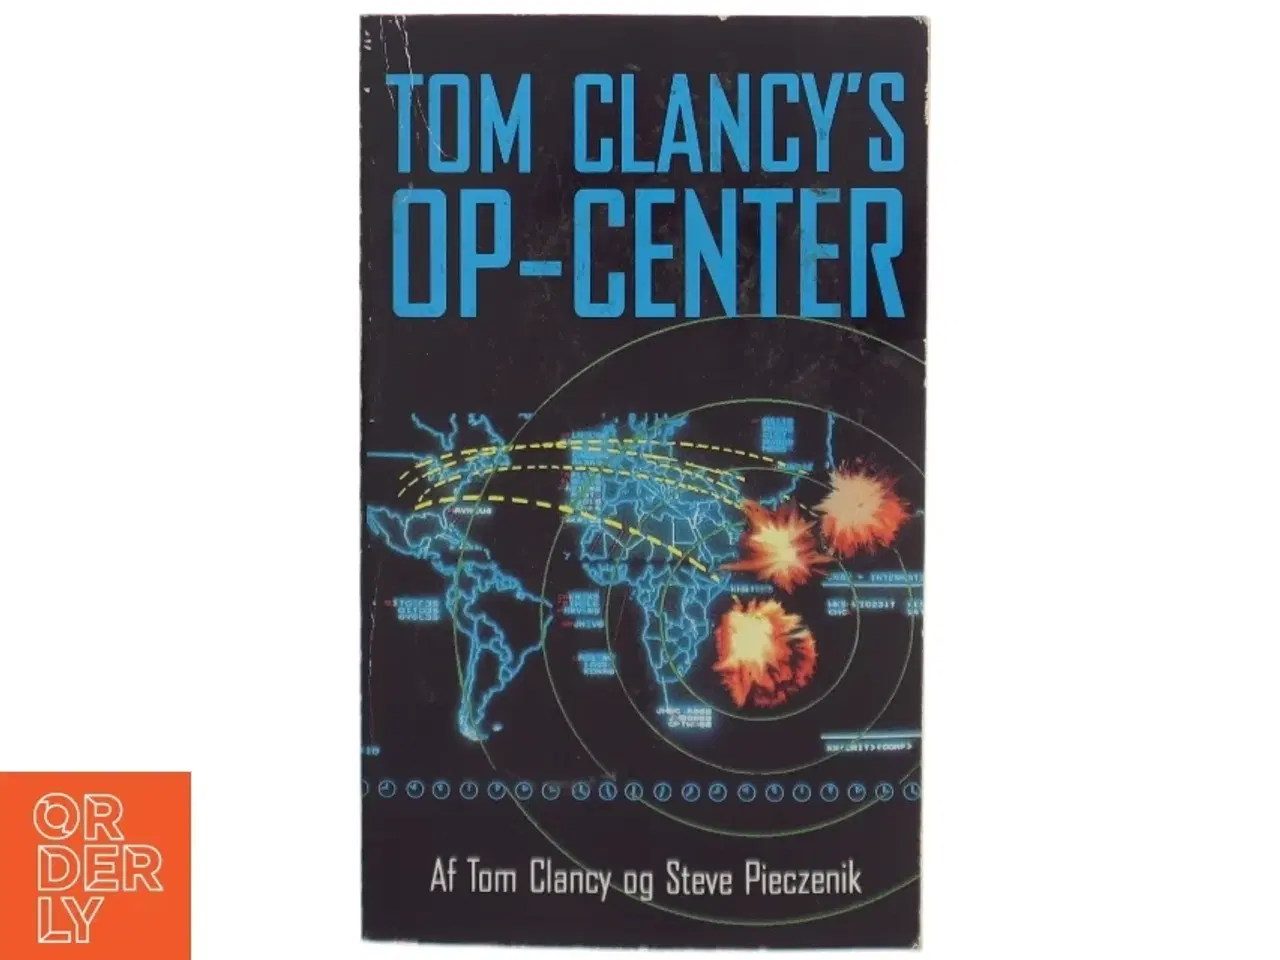 Billede 1 - Tom Clancy's Op-center af Tom Clancy og Steve Pieczenik (bog)